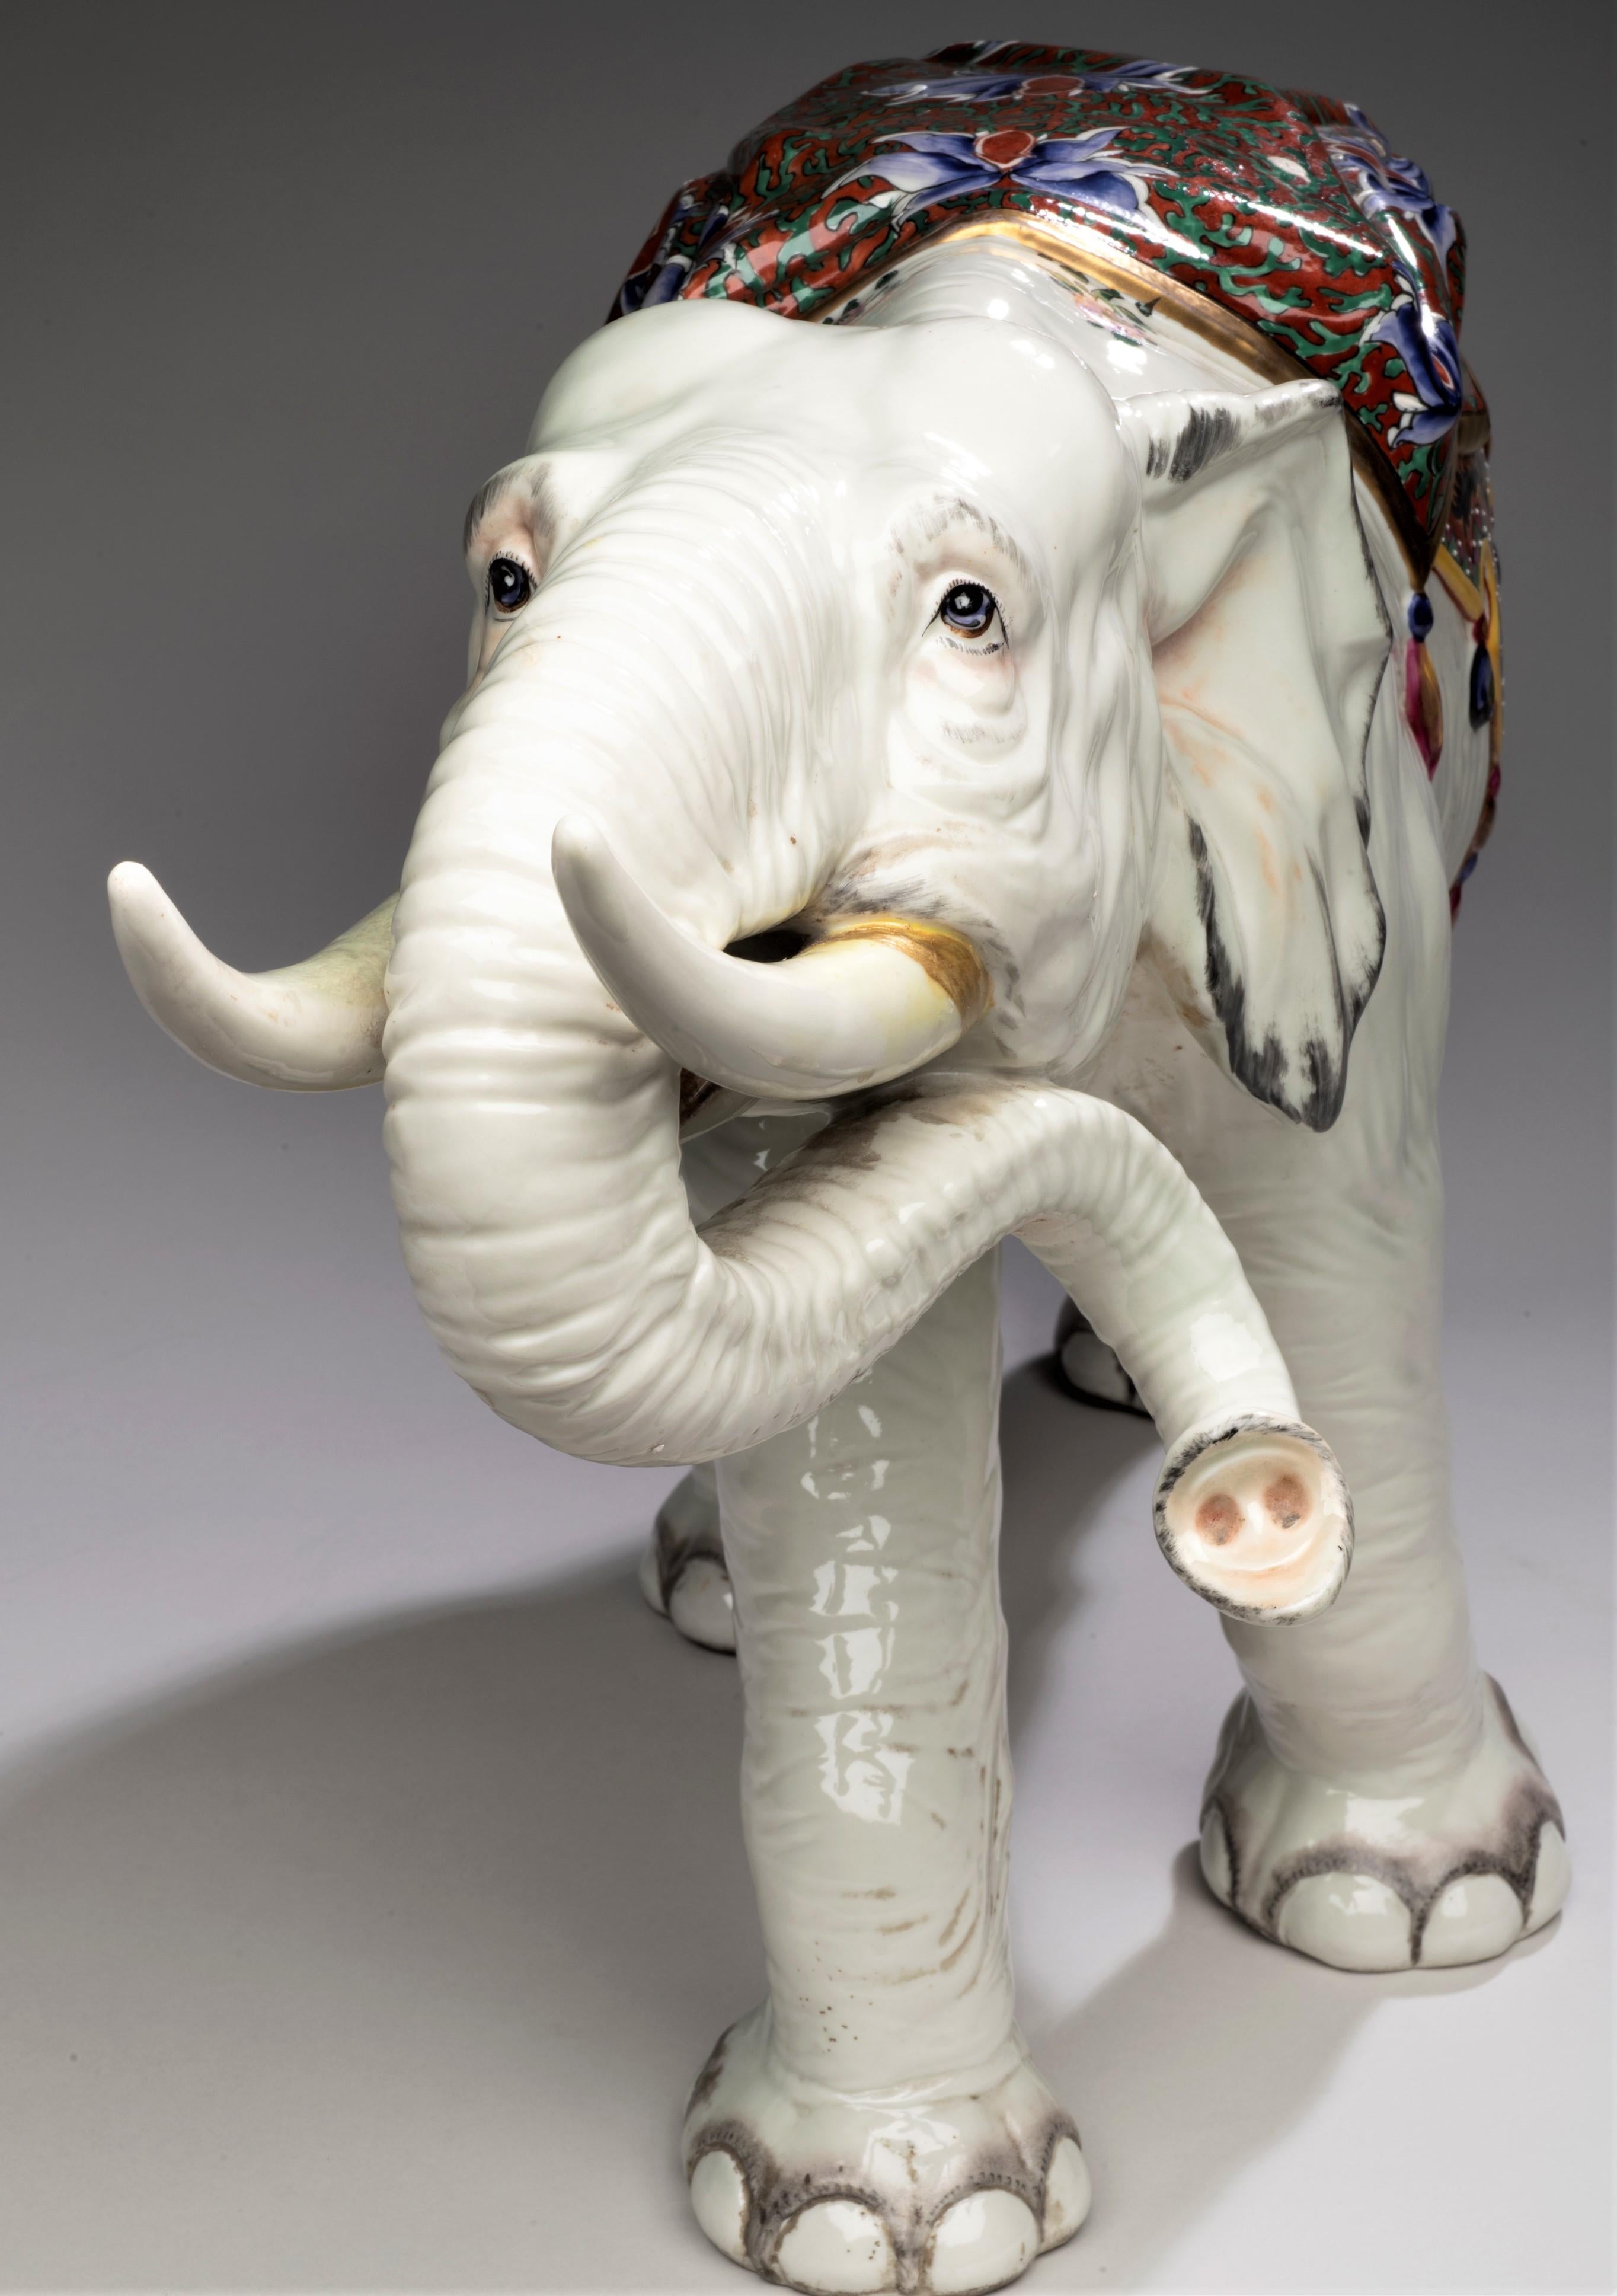 Elefante de porcelana muy grande
Francia, hacia 1900
Porcelana, esmaltes
28 x 14 1/2 x 9 pulgadas

